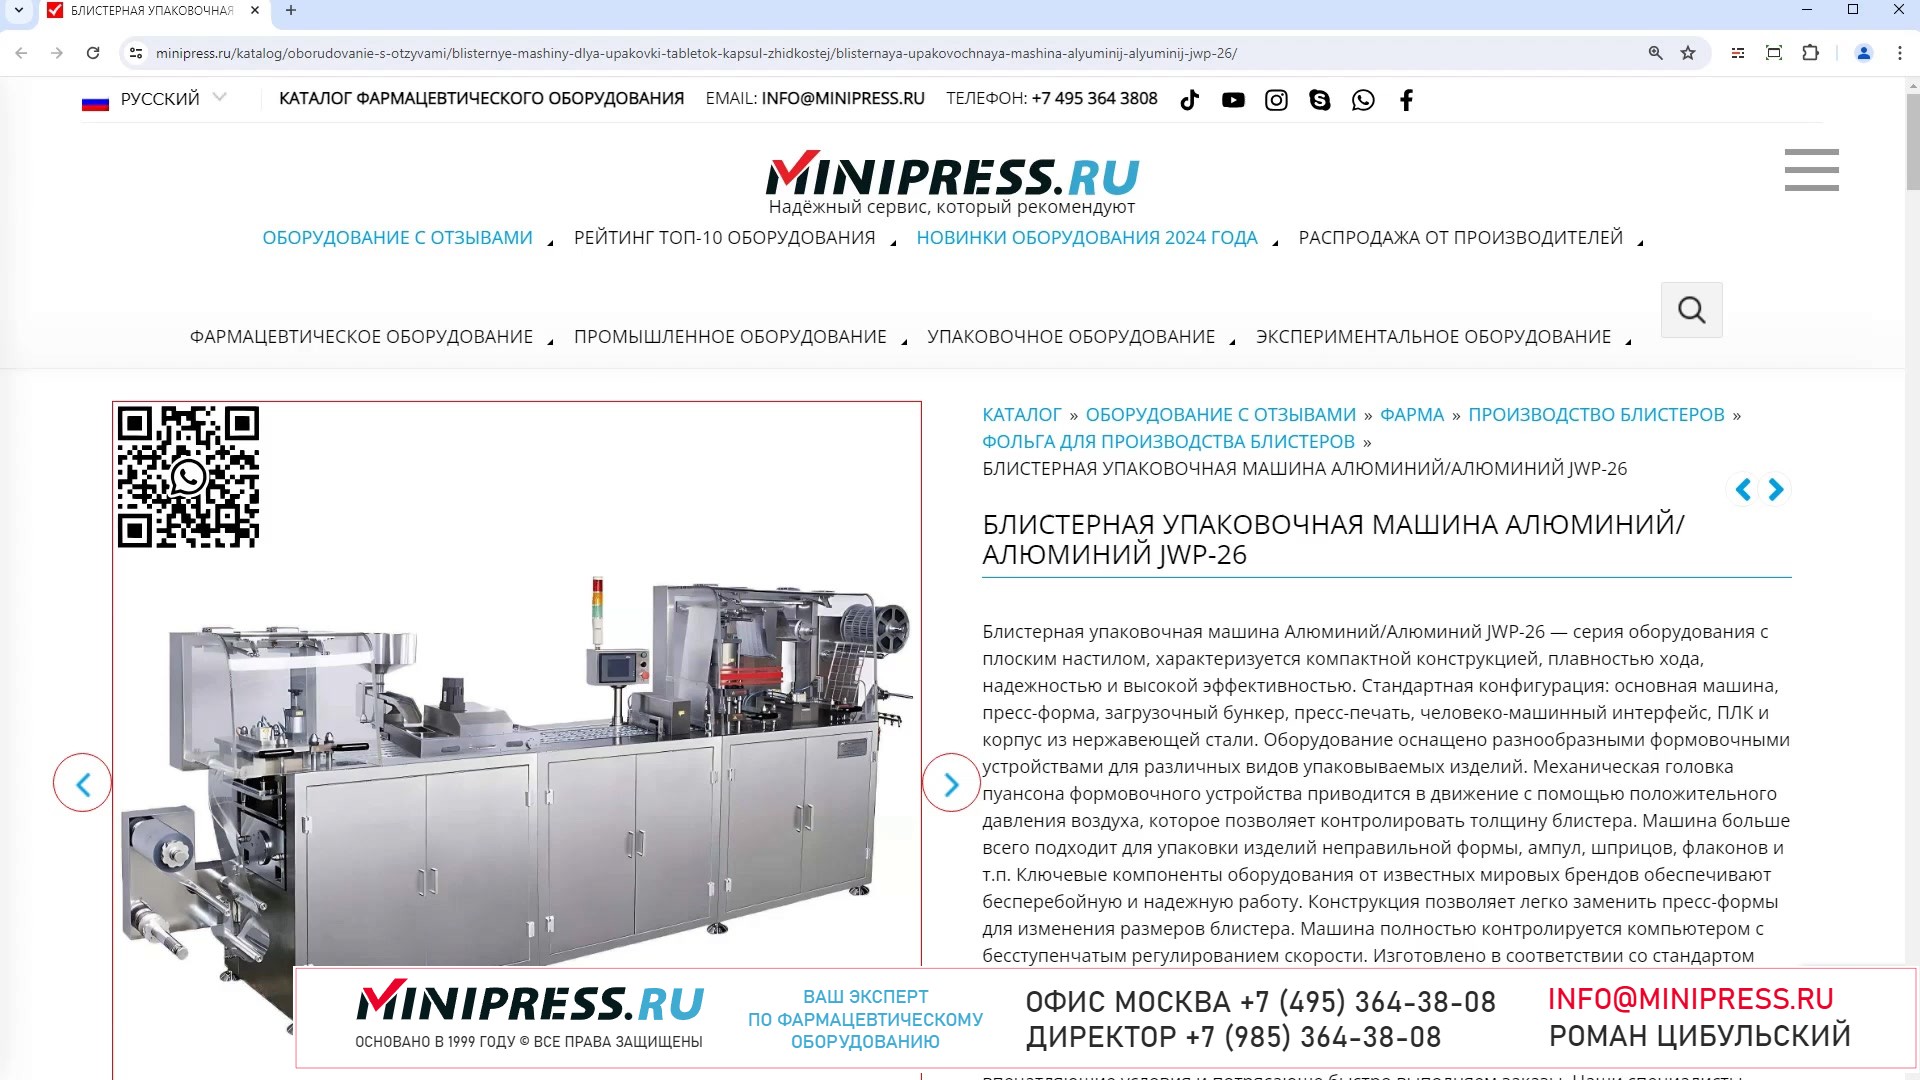 Minipress.ru Блистерная упаковочная машина АлюминийАлюминий JWP-26